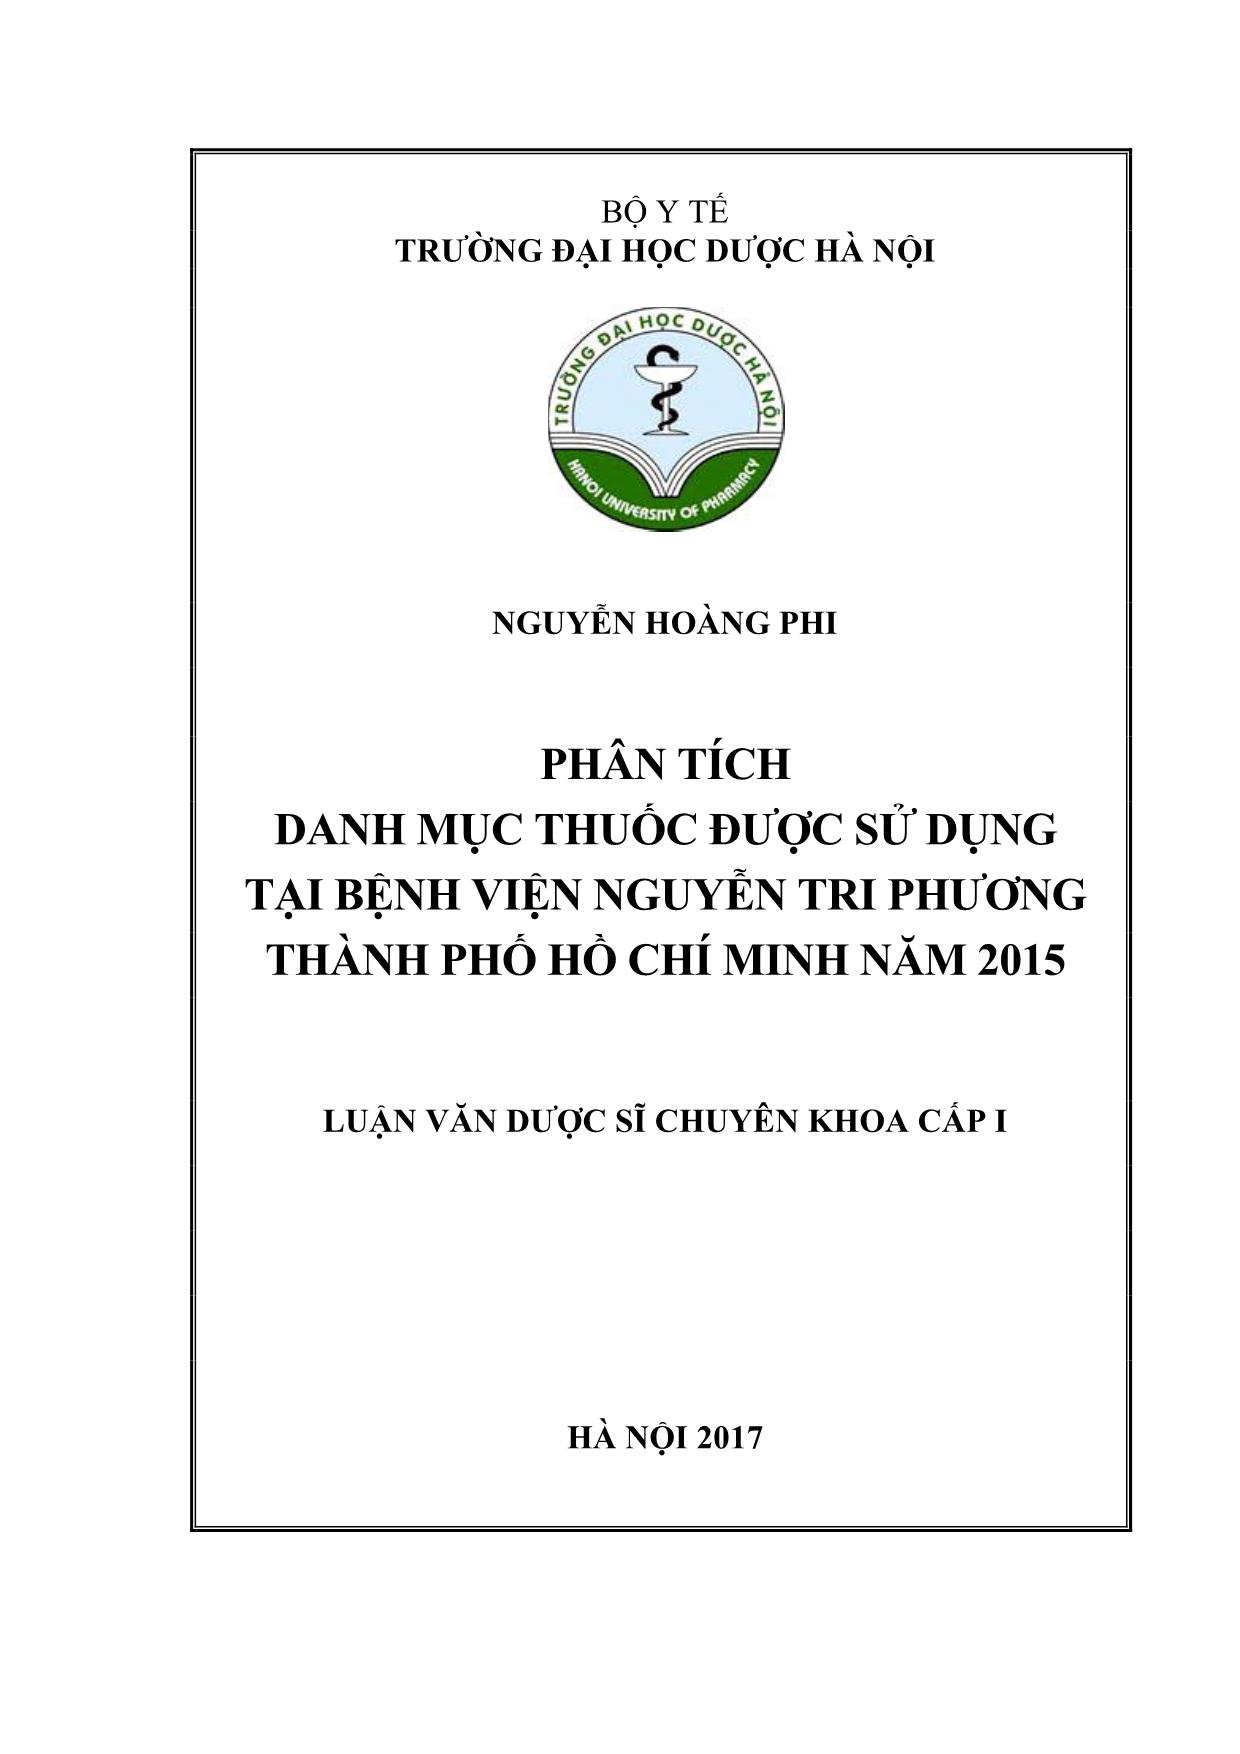 Phân tích danh mục thuốc được sử dụng tại bệnh viện Nguyễn Tri Phương thành phố Hồ Chí Minh năm 2015 trang 1